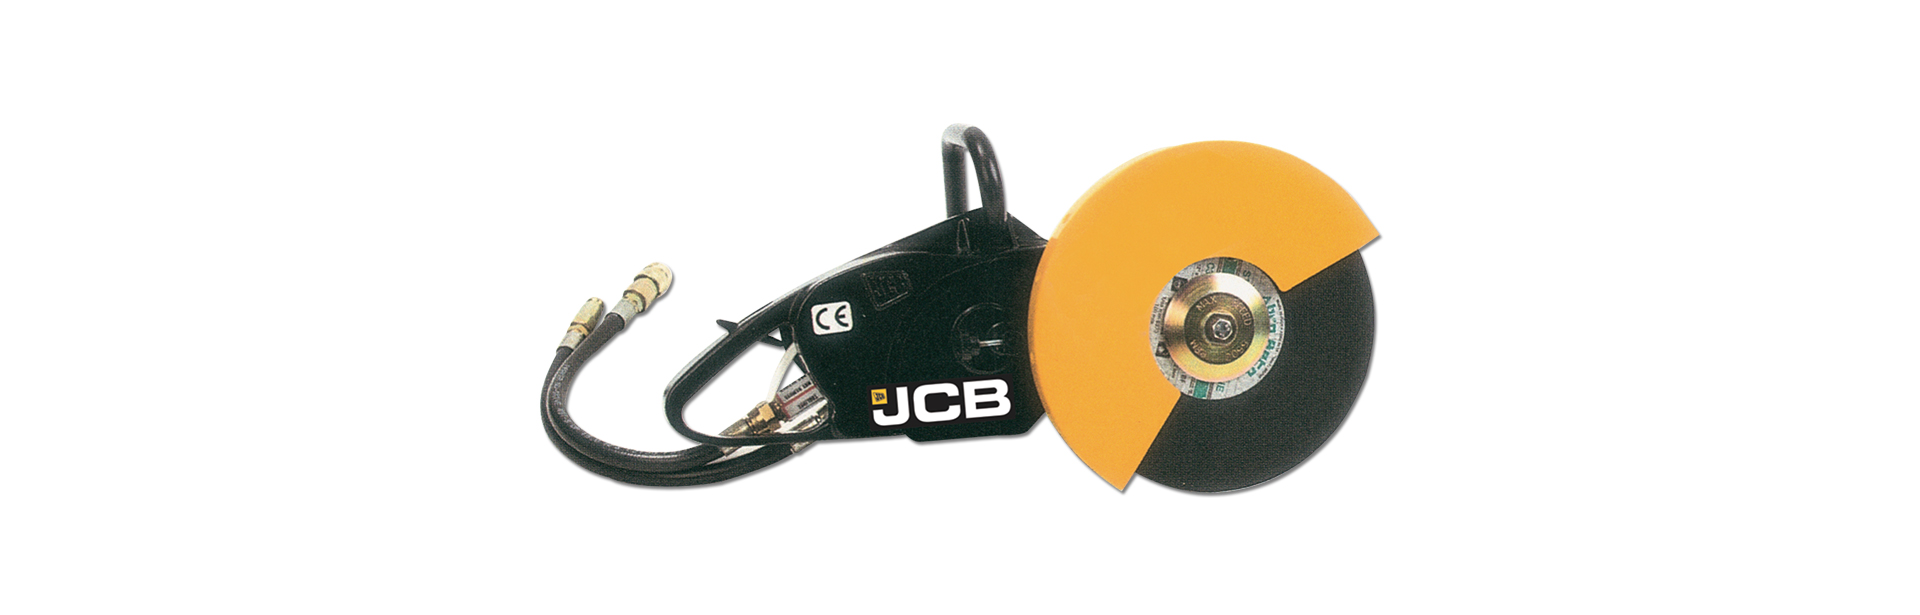 JCB Disc Cutter Light Equipment Colombo